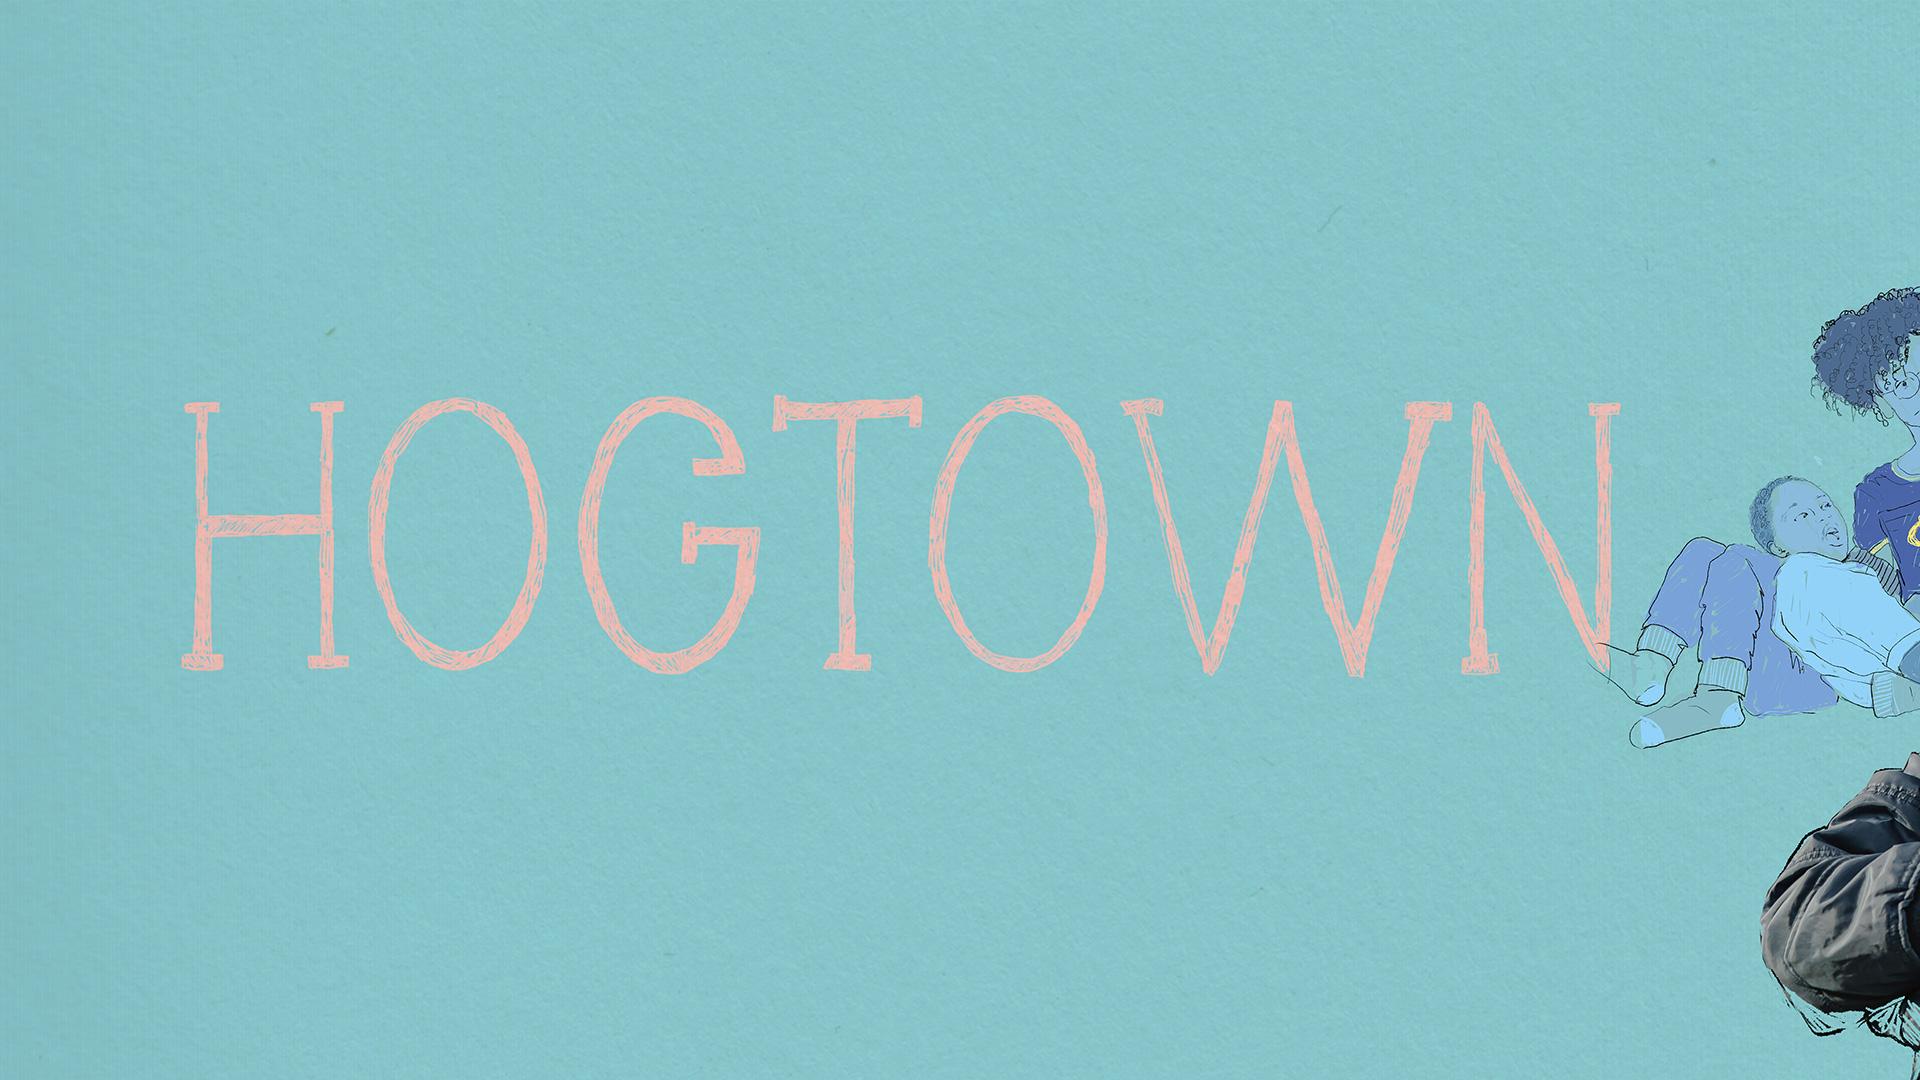 Hogtown/ Ainsi va Manu - Episodes 2,3,4